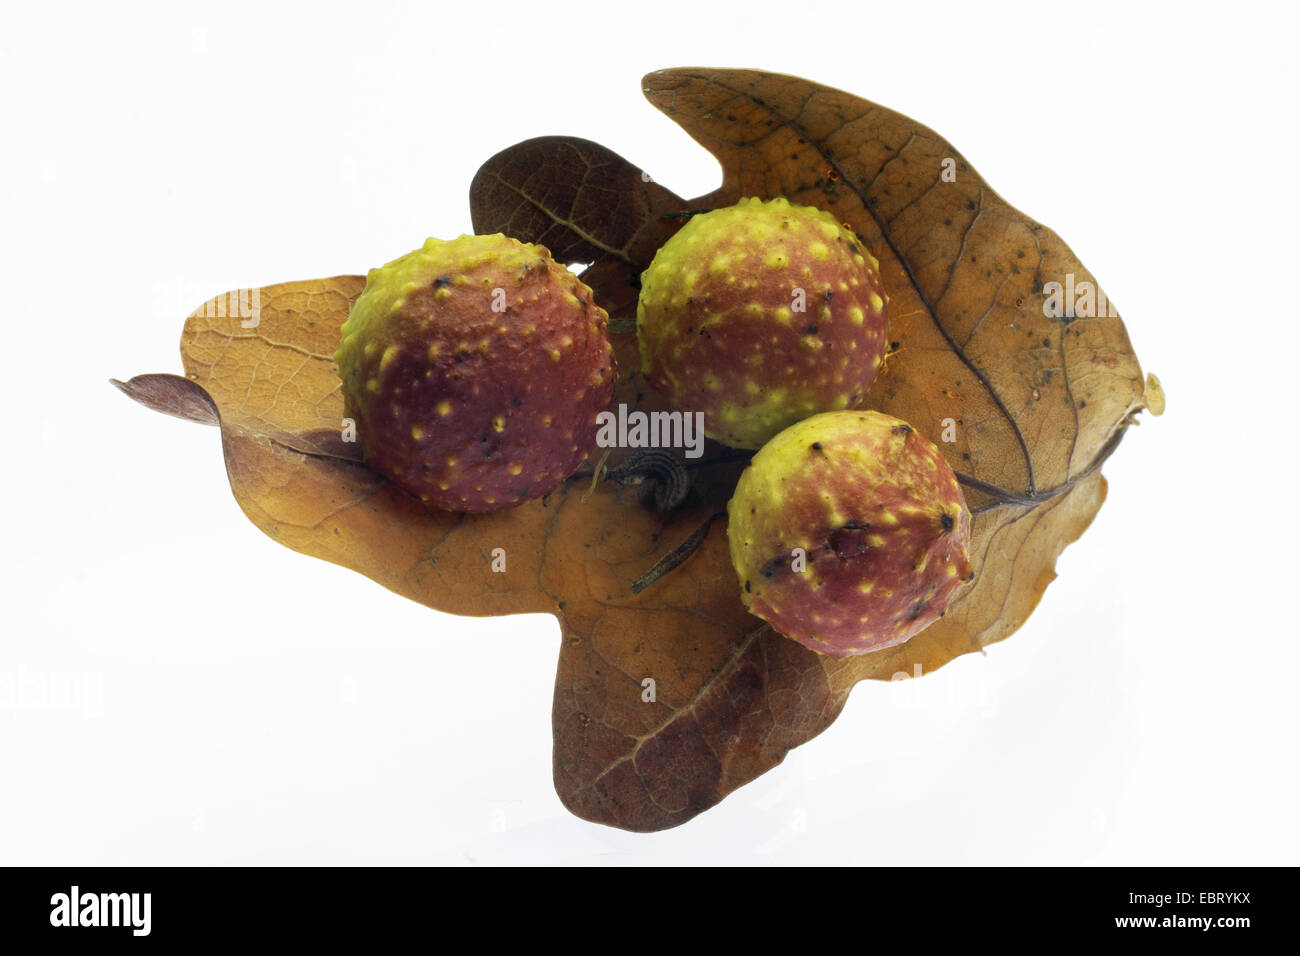 Common oak gallwasp, Oak leaf cherry-gall cynipid, Cherry gall (Cynips quercusfolii), oak apelle on an oak leaf Stock Photo